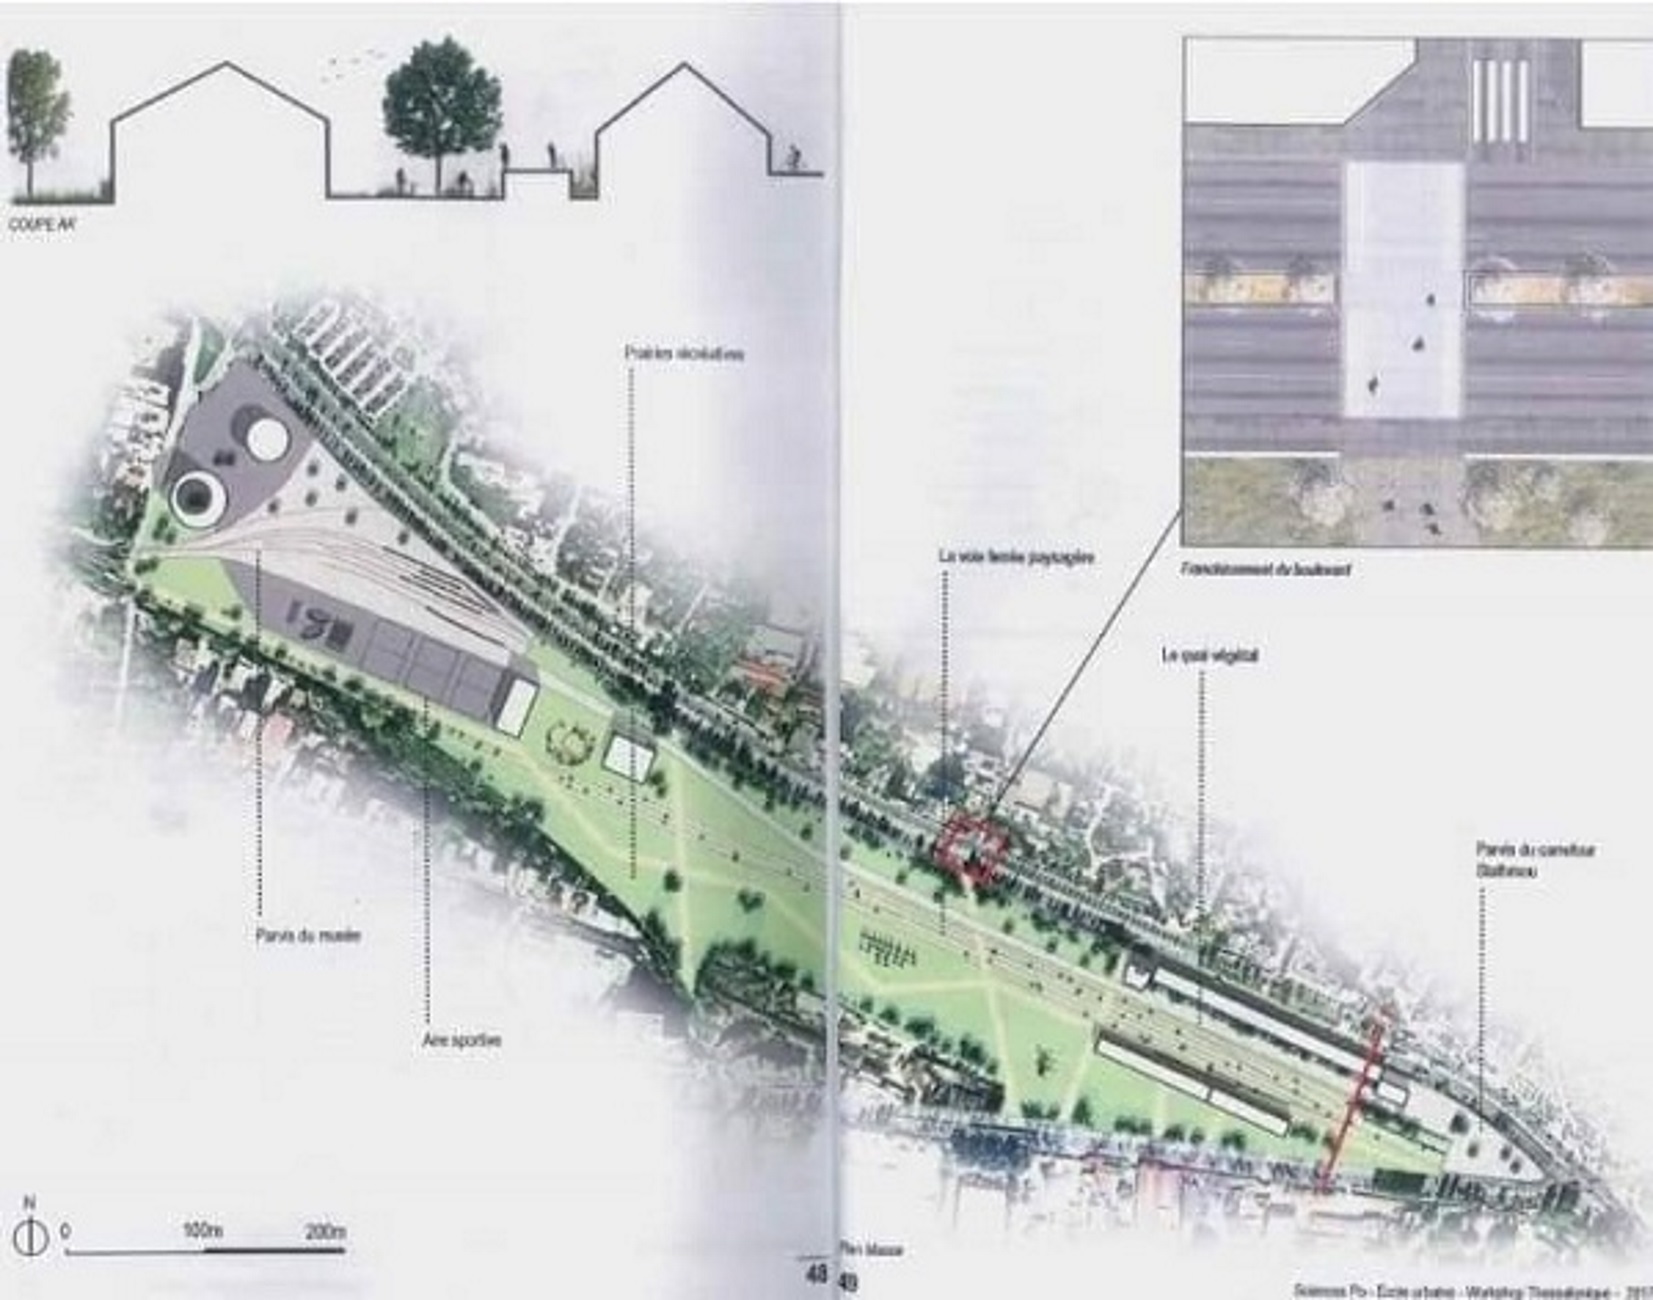 Θεσσαλονίκη: Αυτή είναι η πρόταση του δήμου για μητροπολιτικό πάρκο 100 στρεμμάτων στη δυτική είσοδο